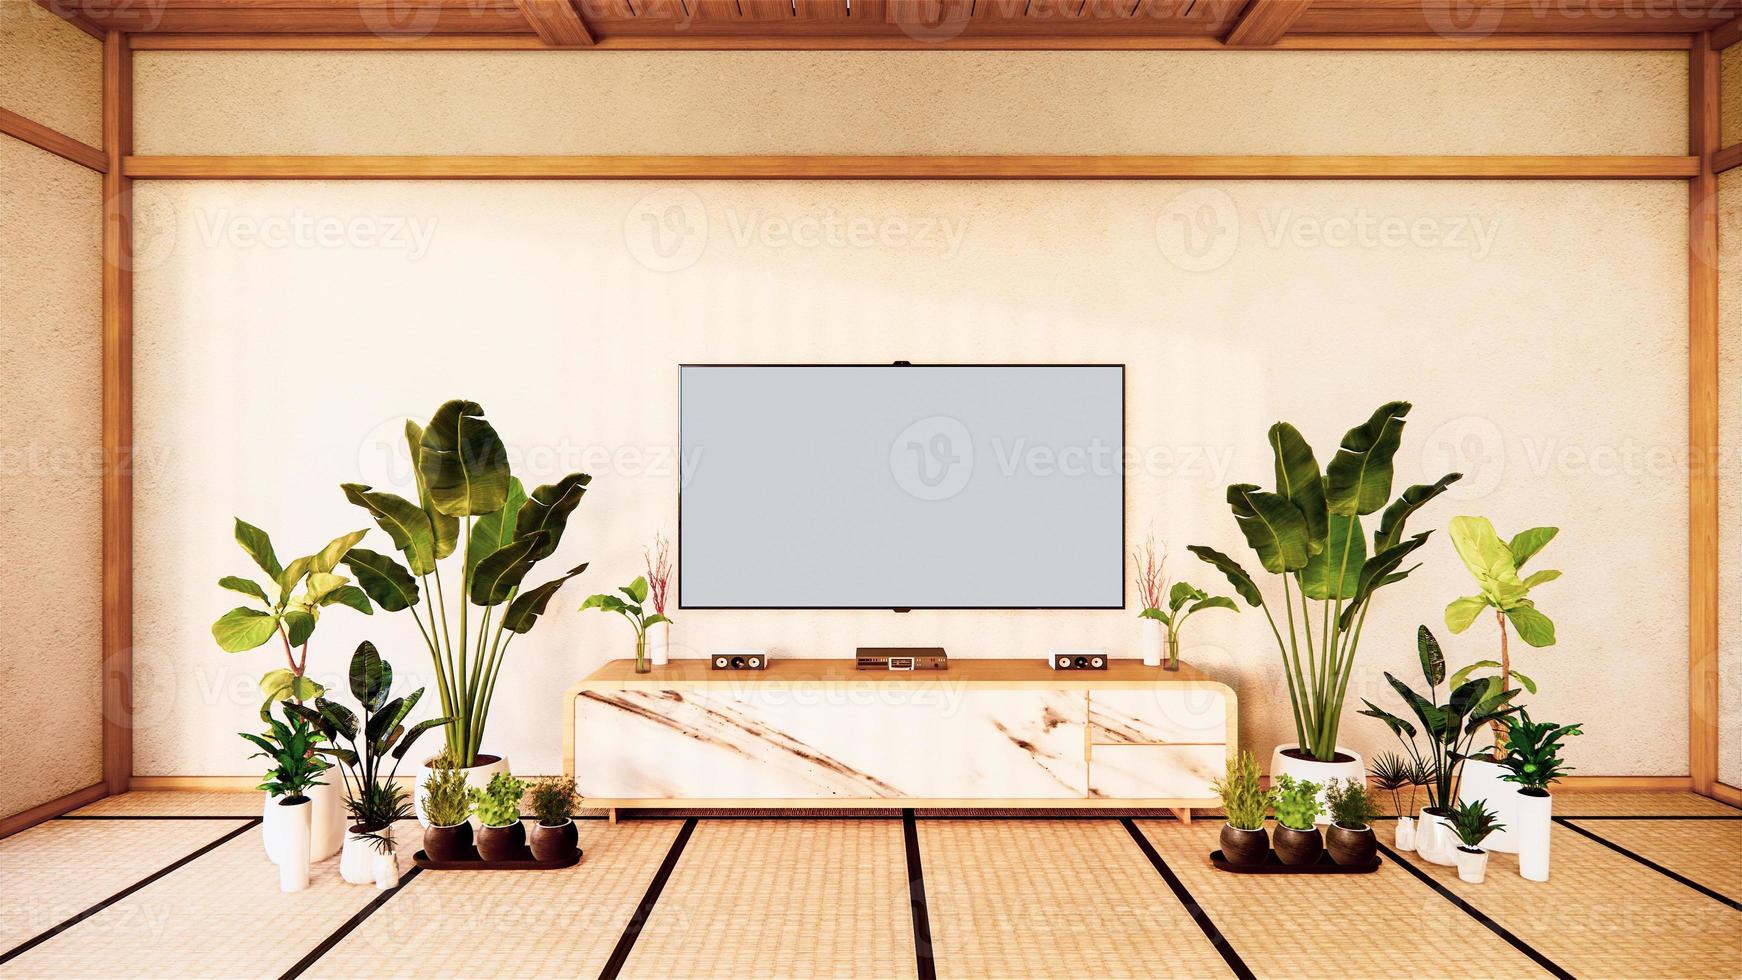 Mueble de televisión en la sala de estar japonesa sobre fondo de pared blanca, representación 3d foto